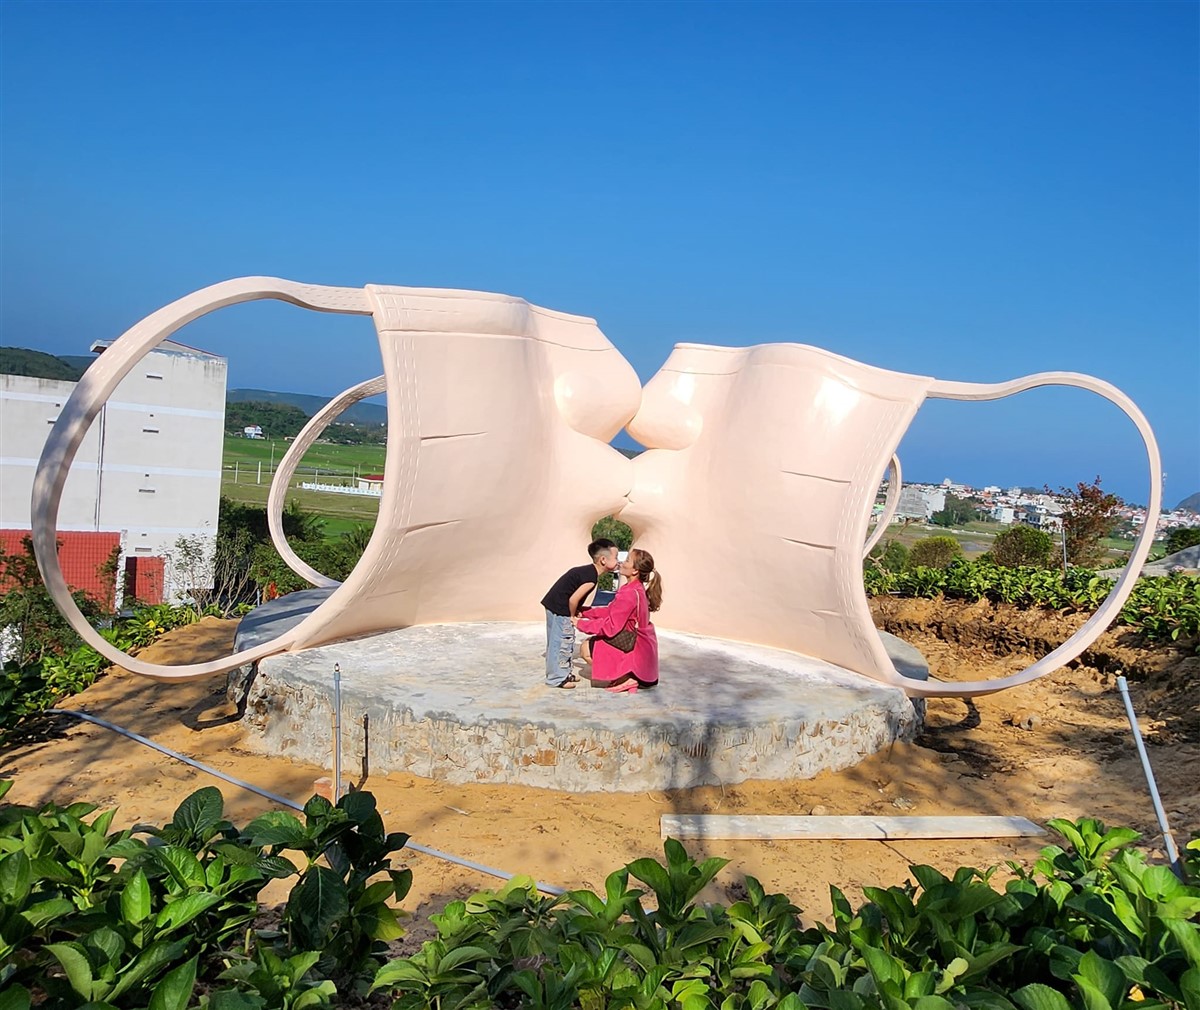 Canary Garden Phú Yên - Địa điểm du lịch Phú Yên - Quy Nhơn Tourist